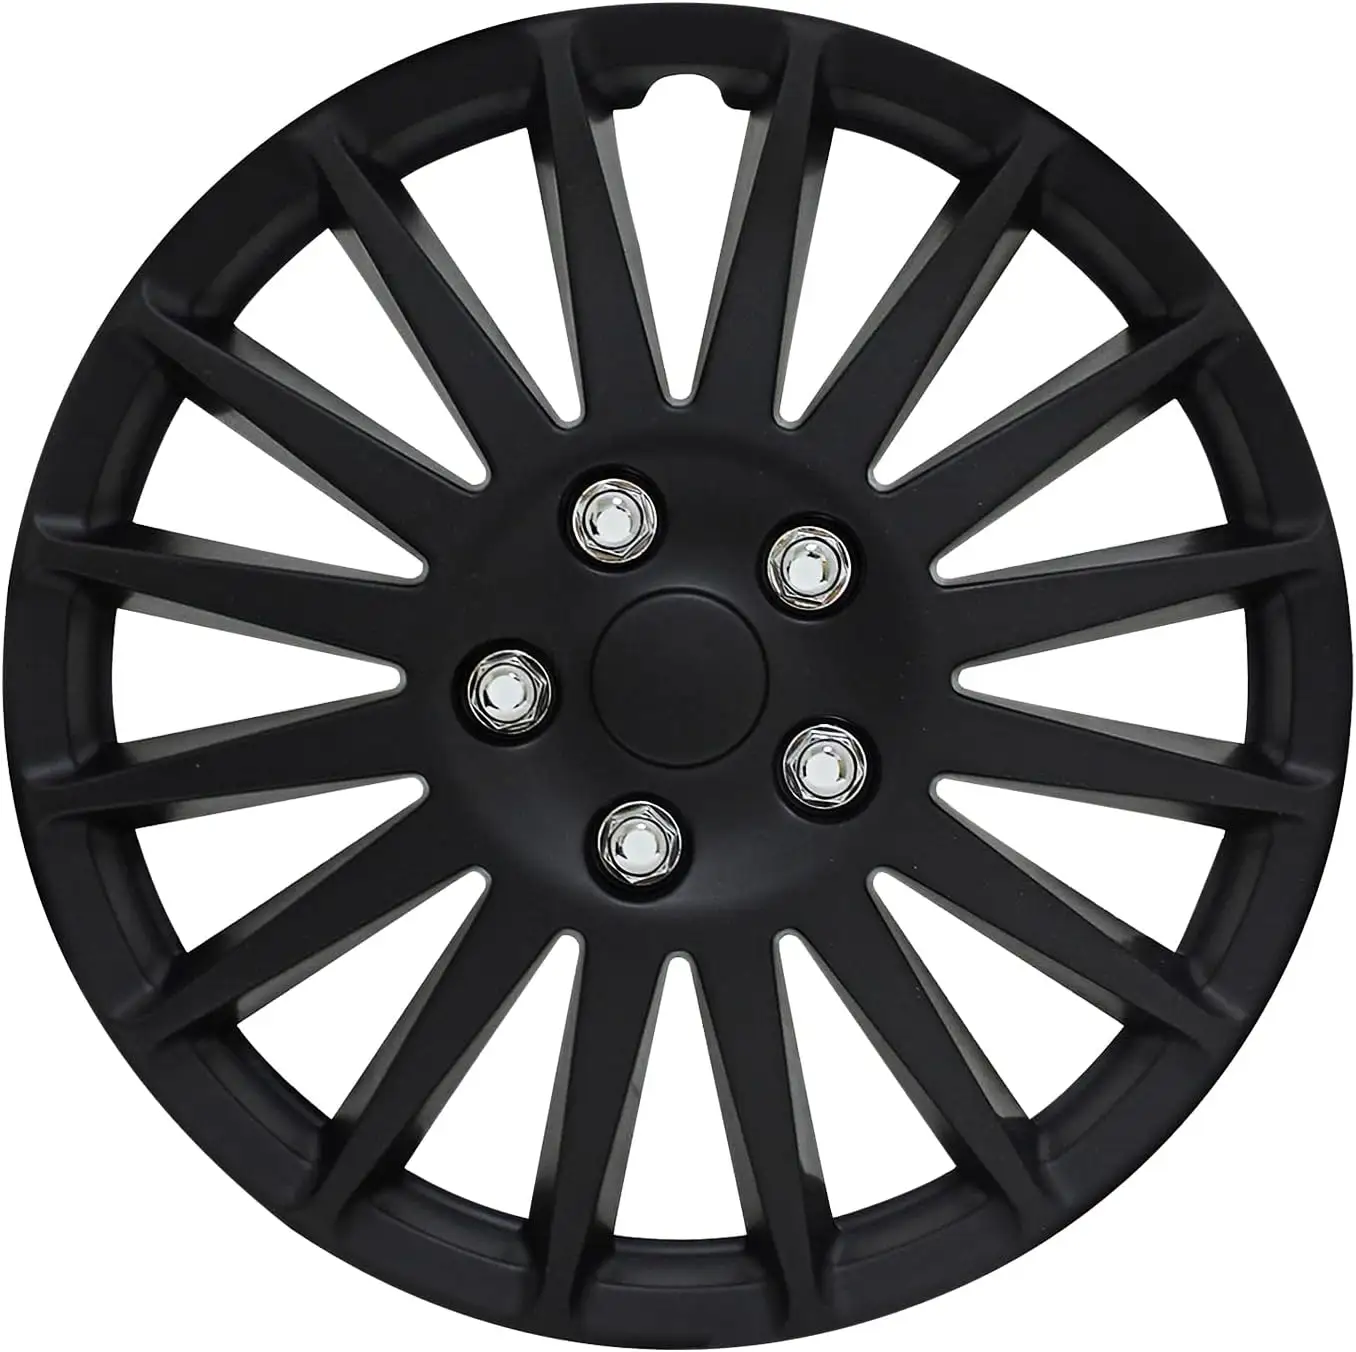 Couvercle de moyeu de roue mercedes accessoires de voiture noir 16-20 pouces enjoliveurs de voiture couvercle de moyeu roue